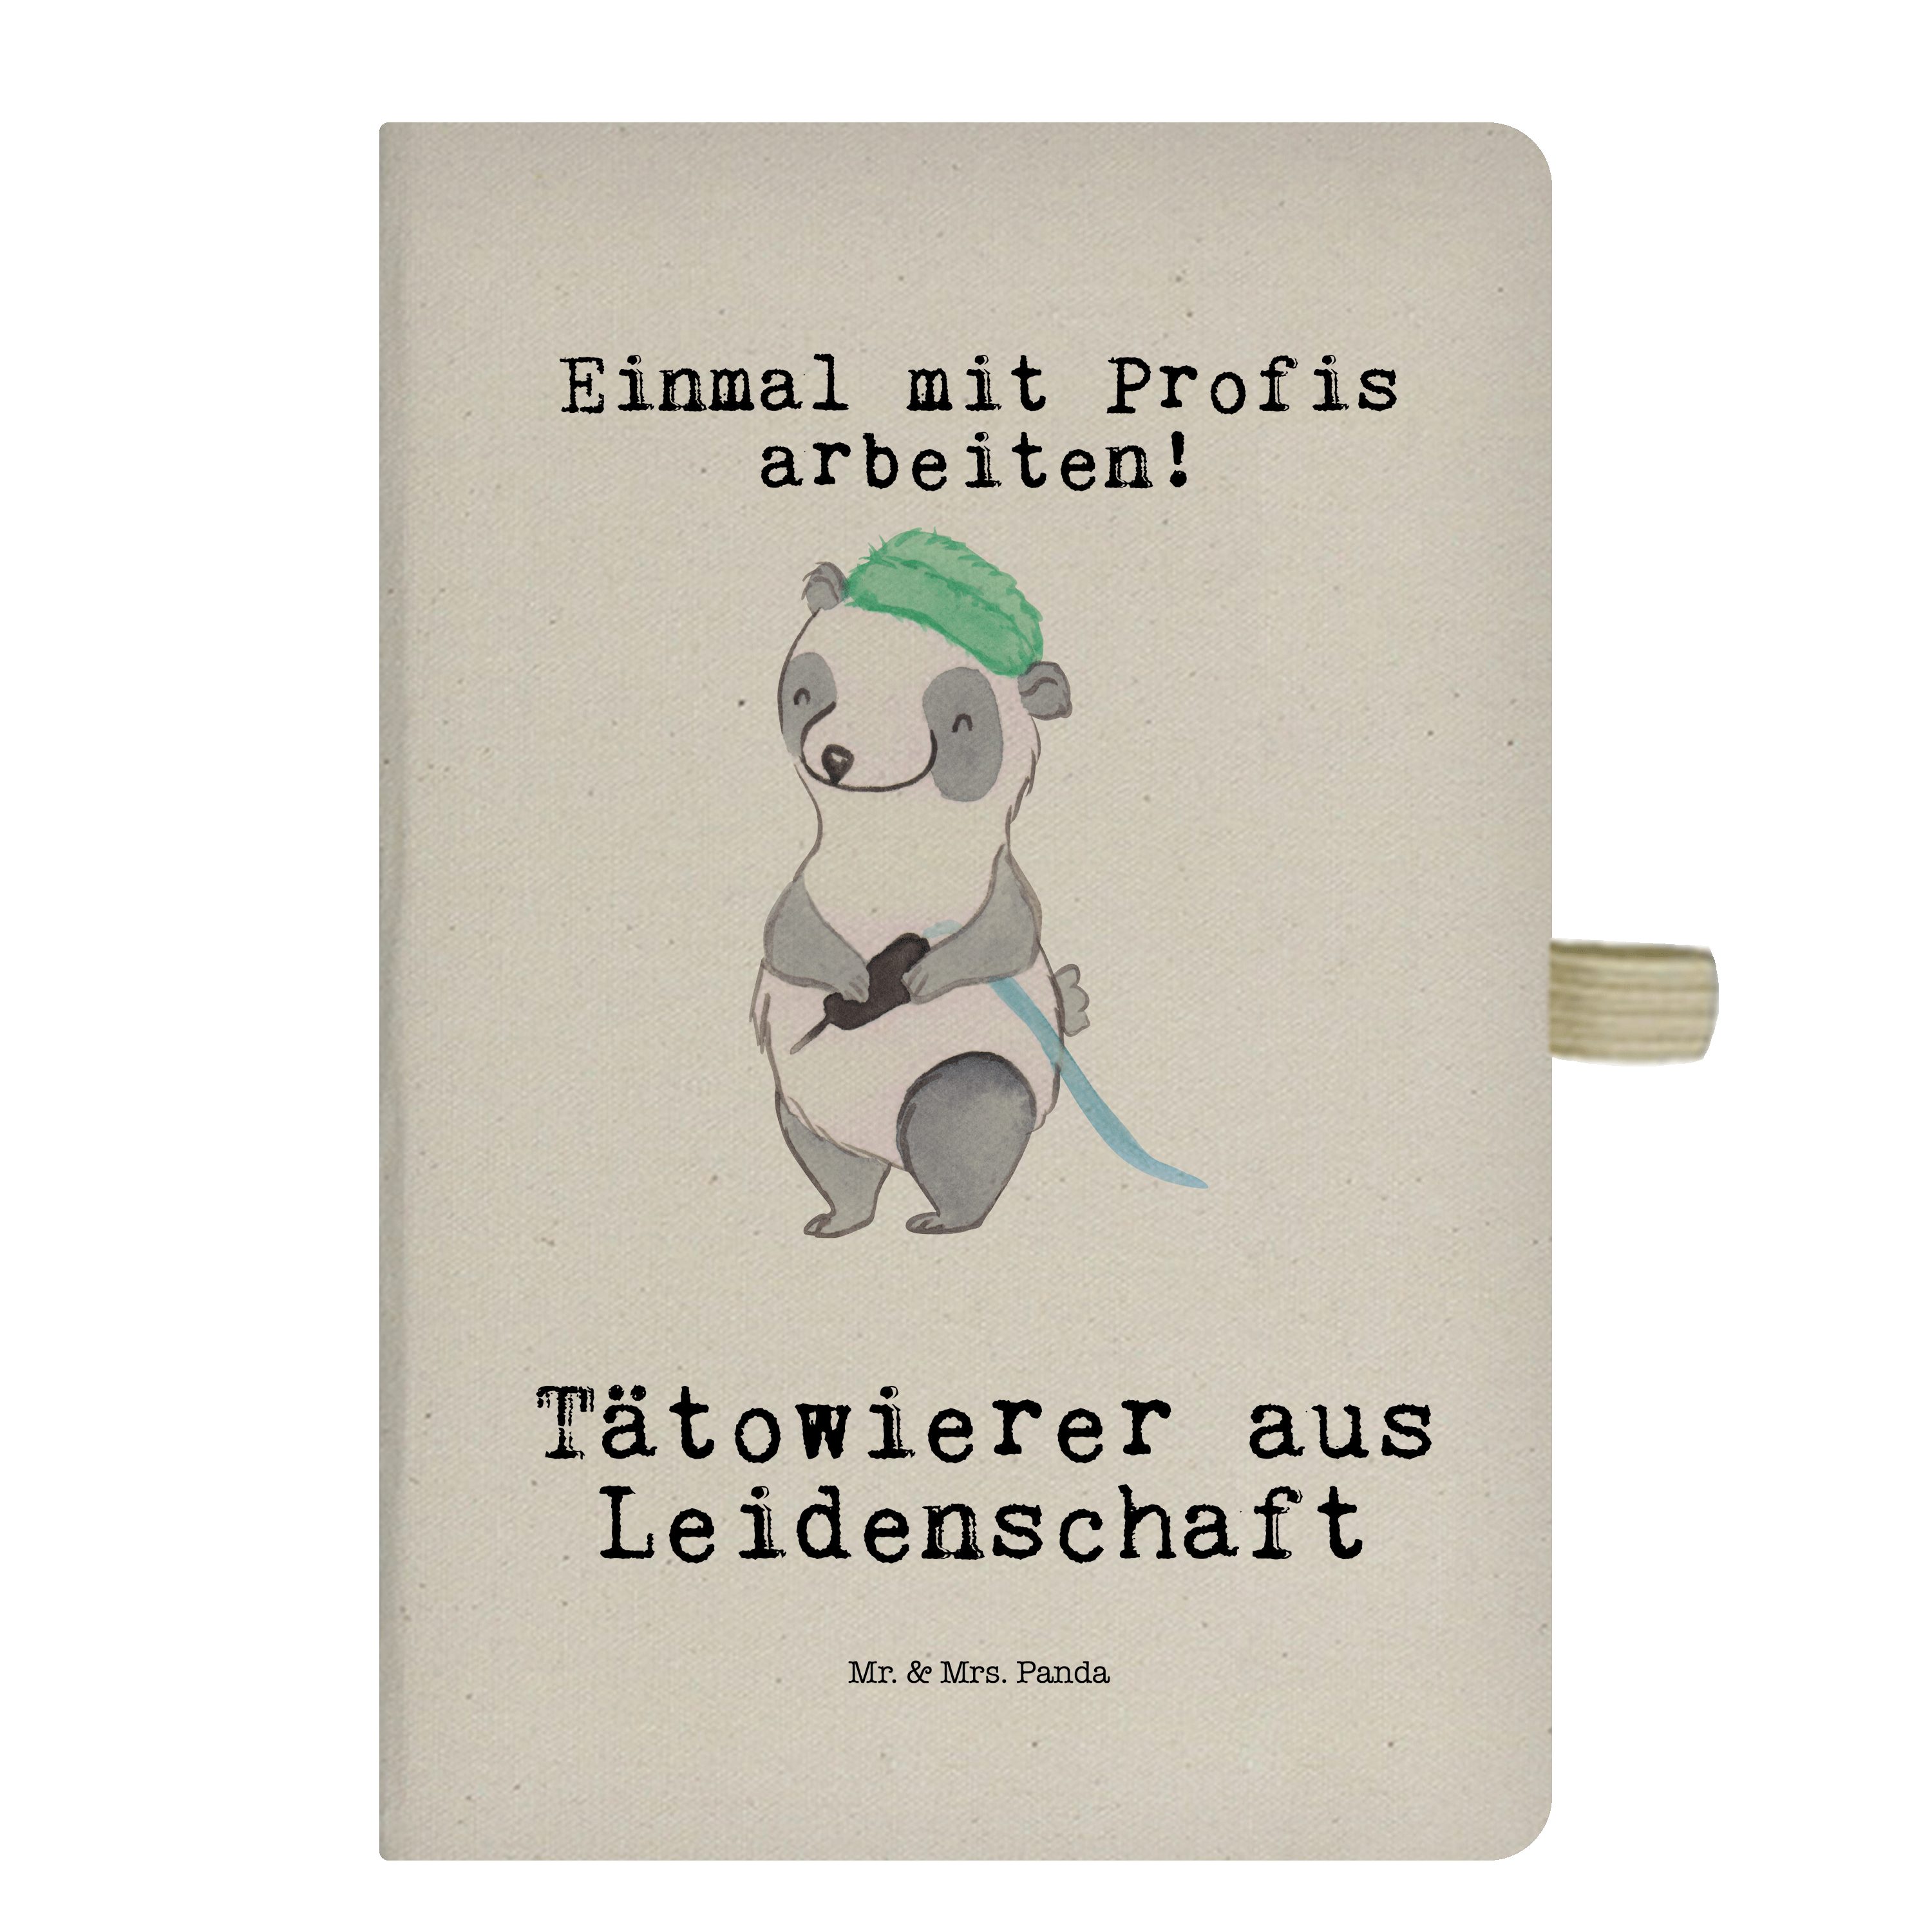 & Leidenschaft aus Panda & Notizbuch - Abschied Geschenk, Mr. Panda - Transparent Tätowierer Mrs. Mr. Mrs. Beruf,